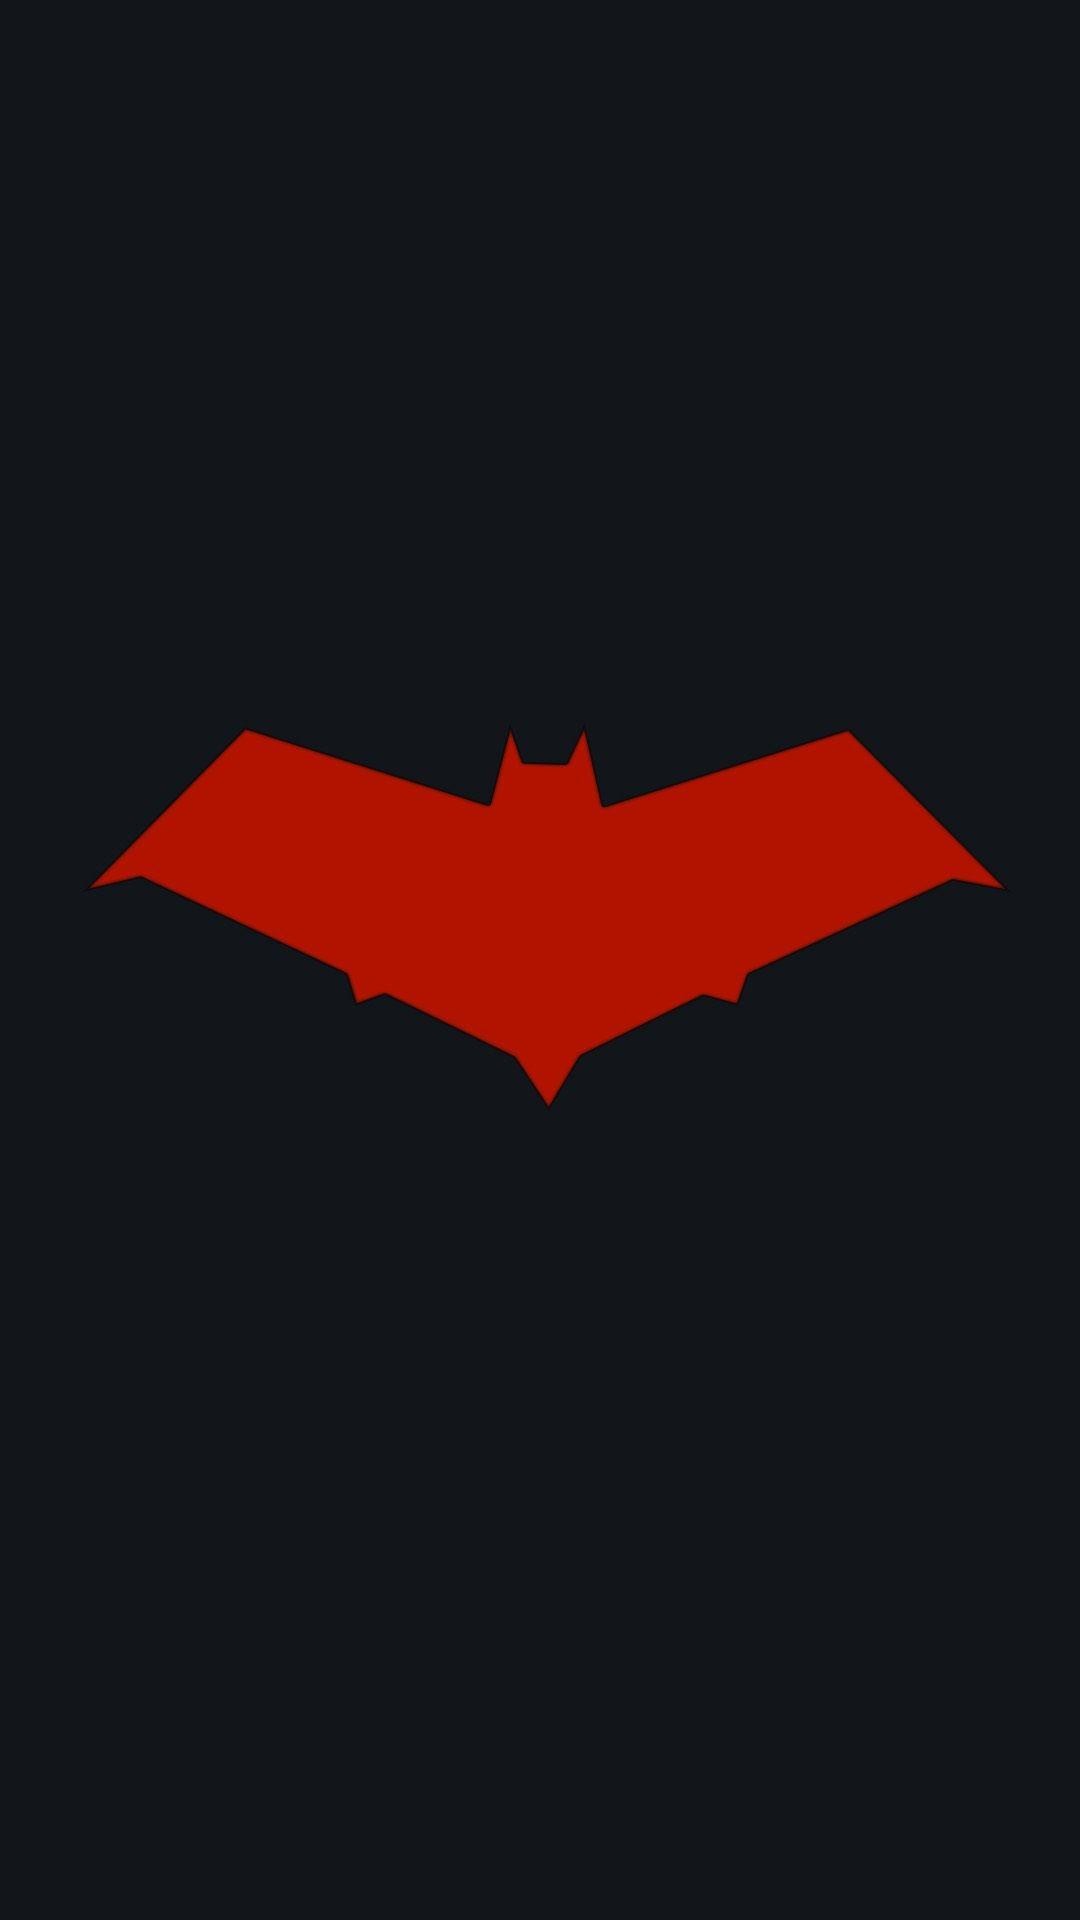 1080x1920 Photos-Batman-Logo-iPhone-Wallpapers-001